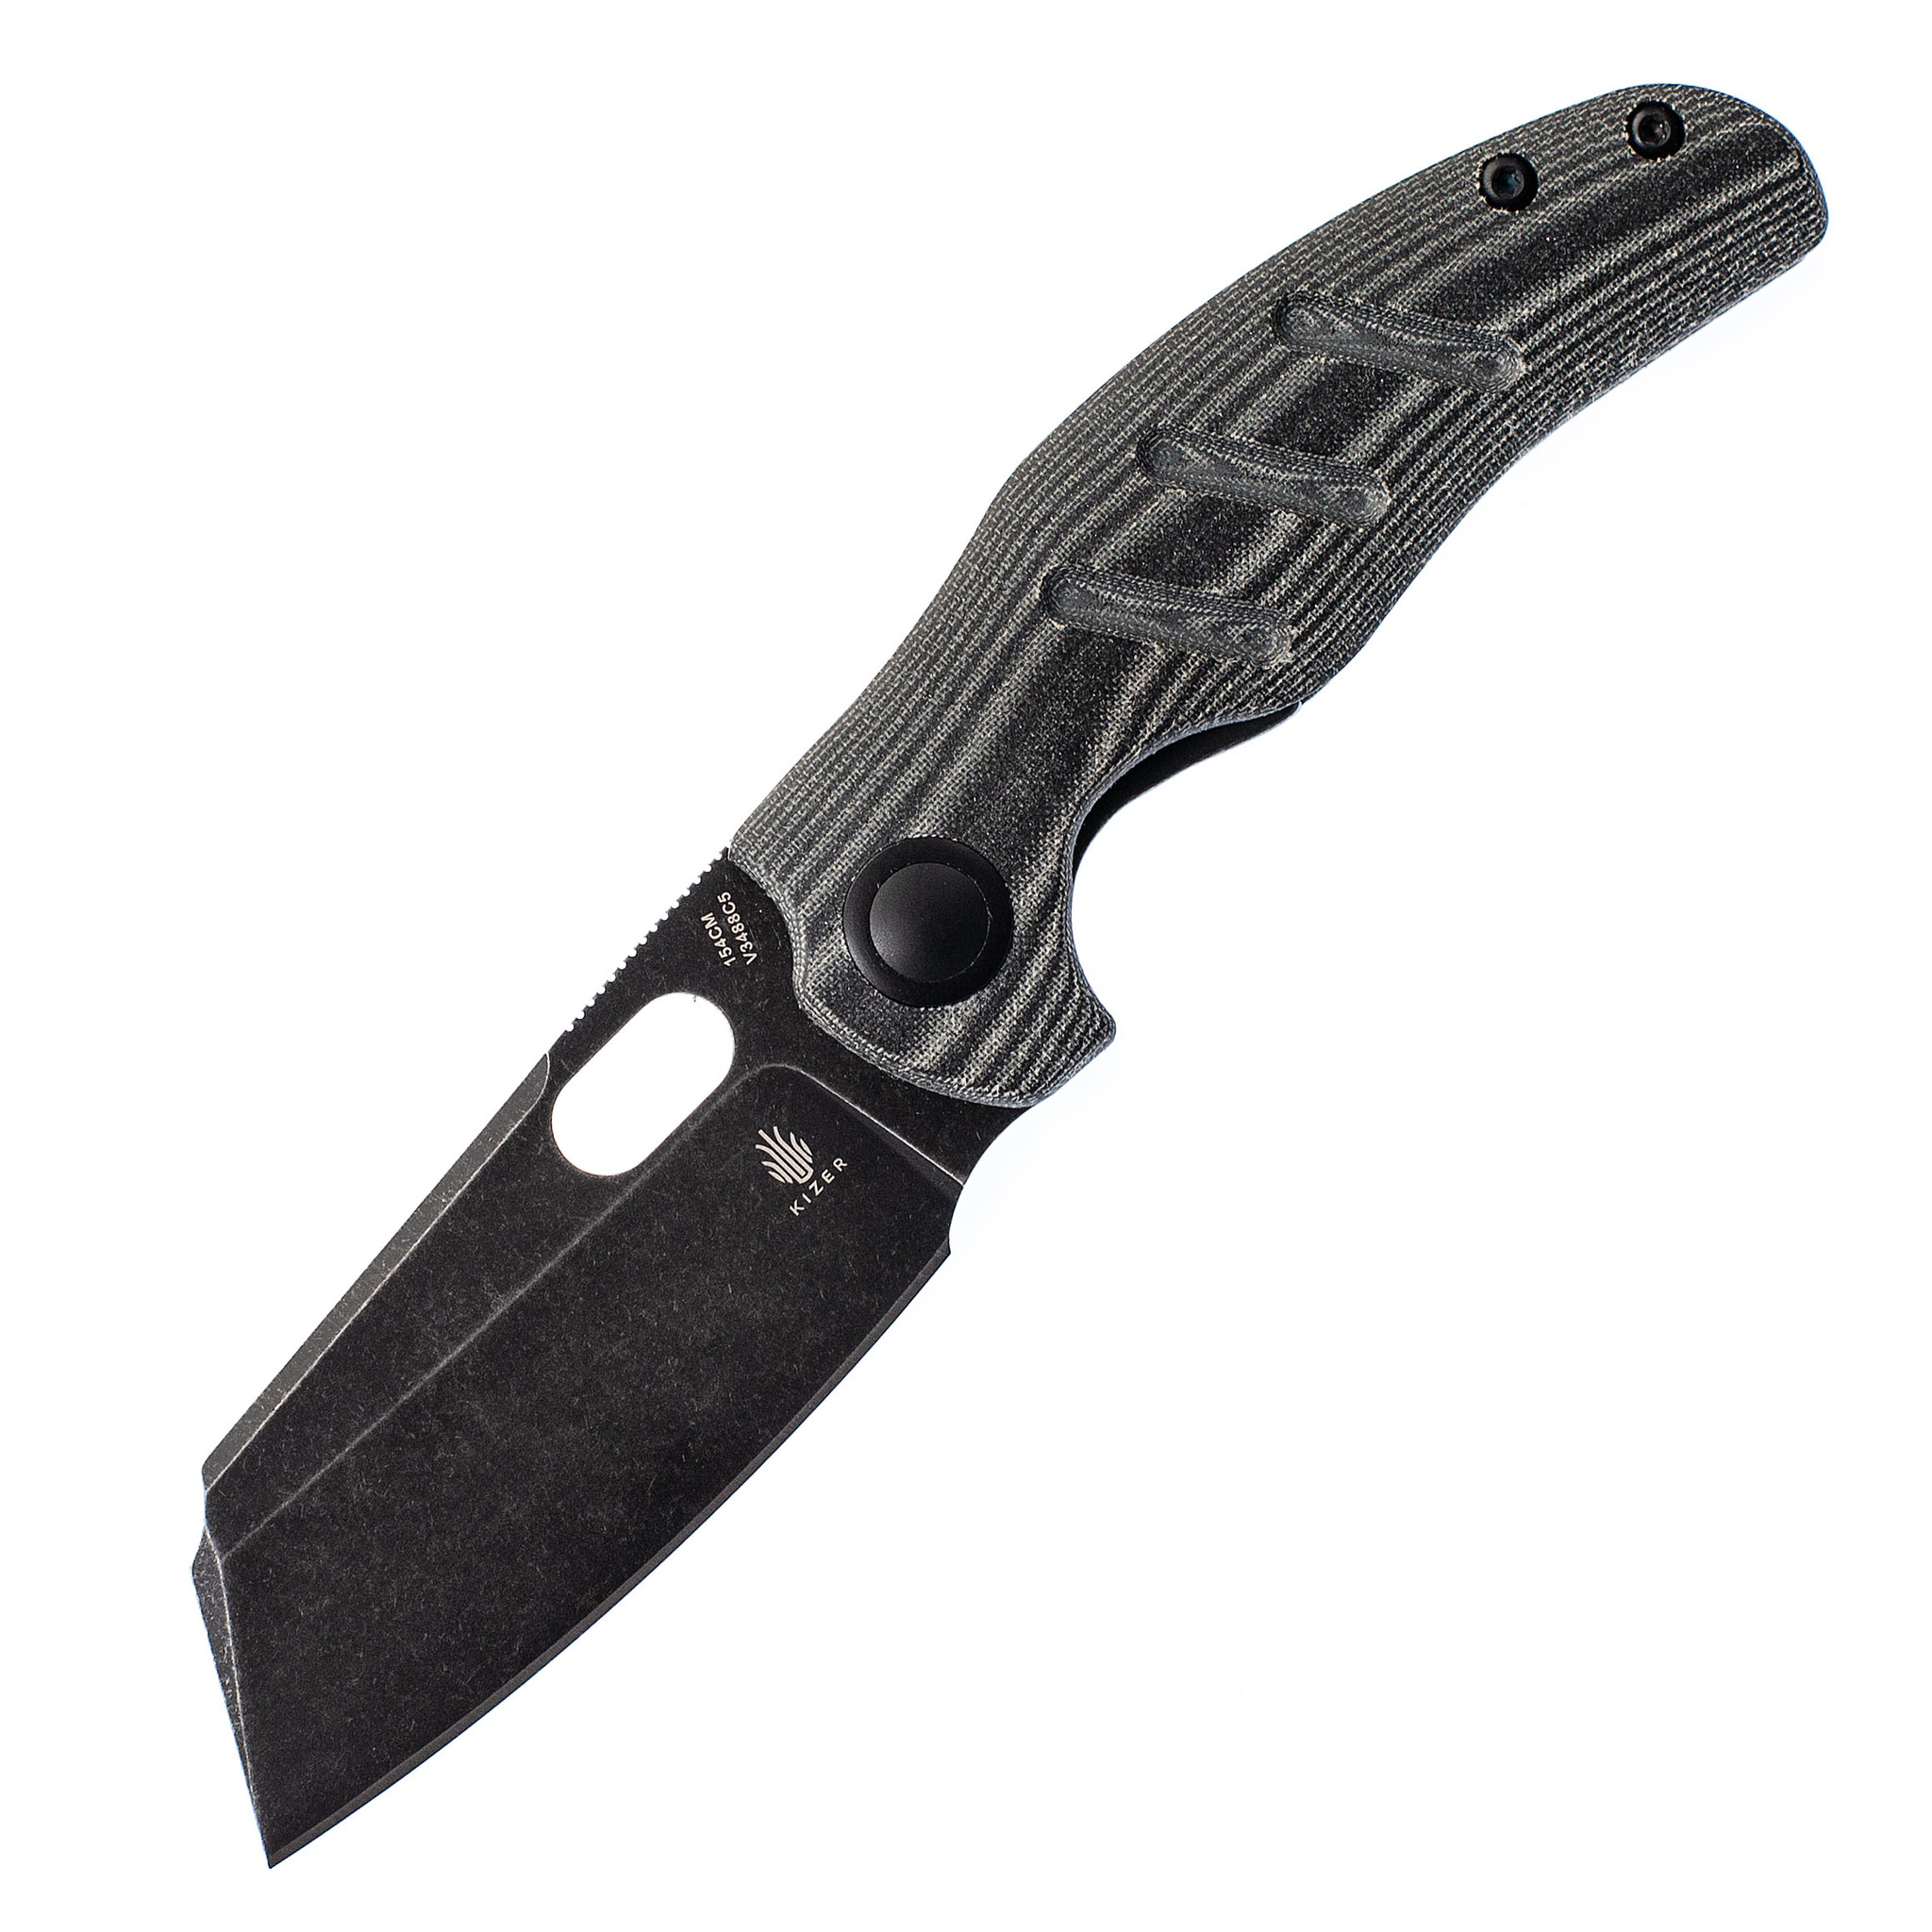 Складной нож Kizer C01C mini Black, сталь 154CM, рукоять микарта нож бабочка мастер к лезвие 7 см рукоять с волнами под углом 9 см